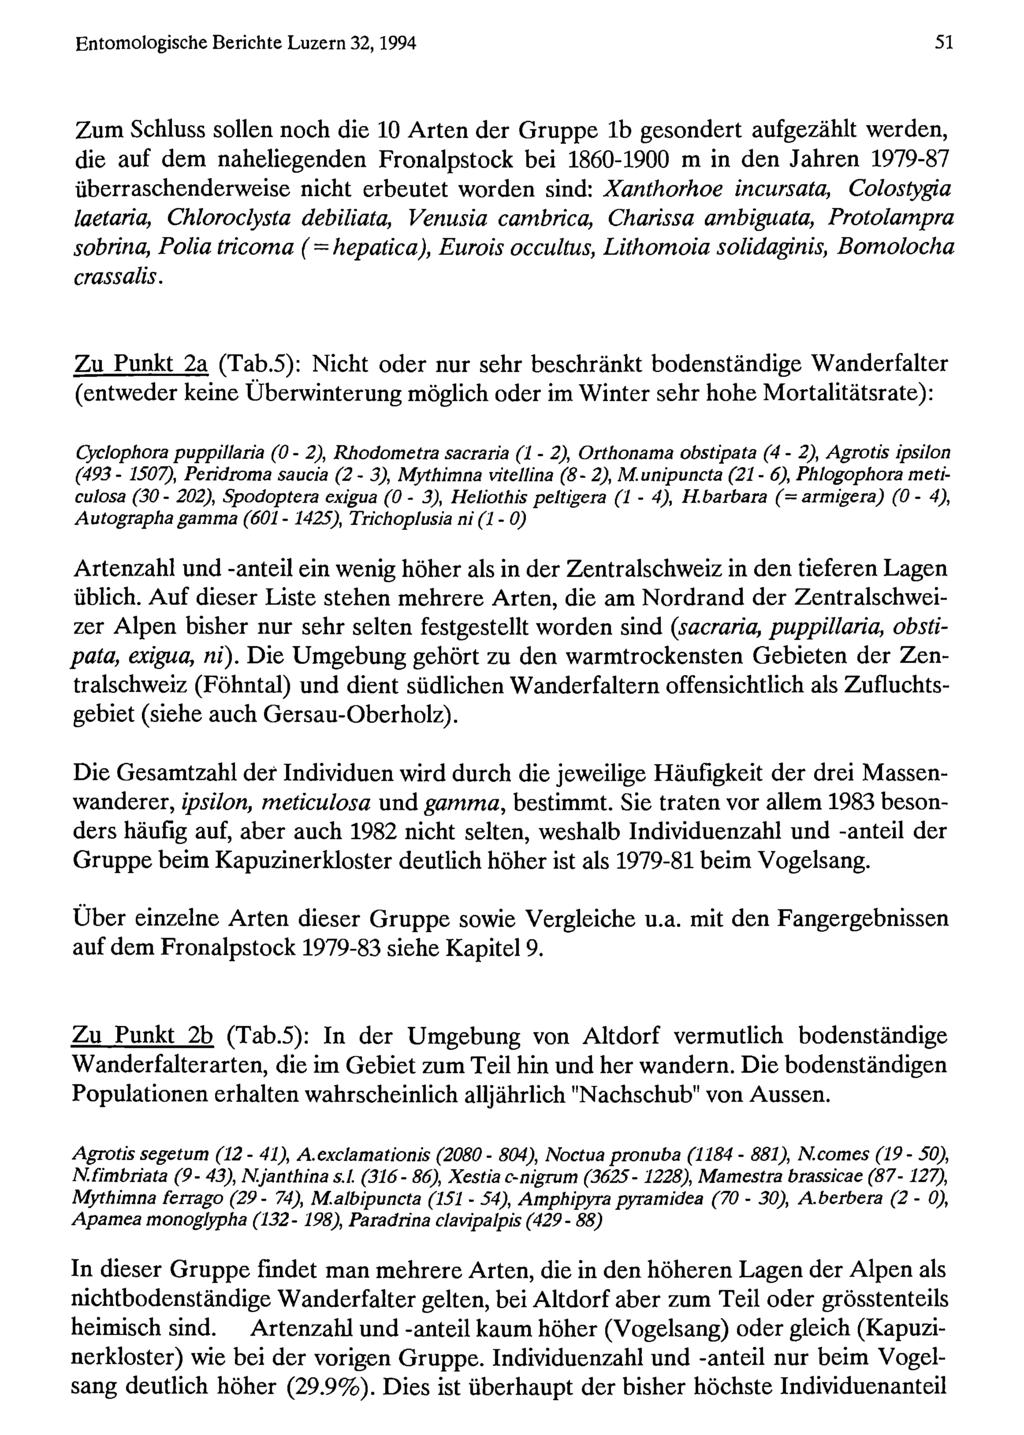 Entomologische Berichte Natur-Museum Luzern 32,1994 und Entomologische Gesellschaft Luzern; download www.biologiezentrum.